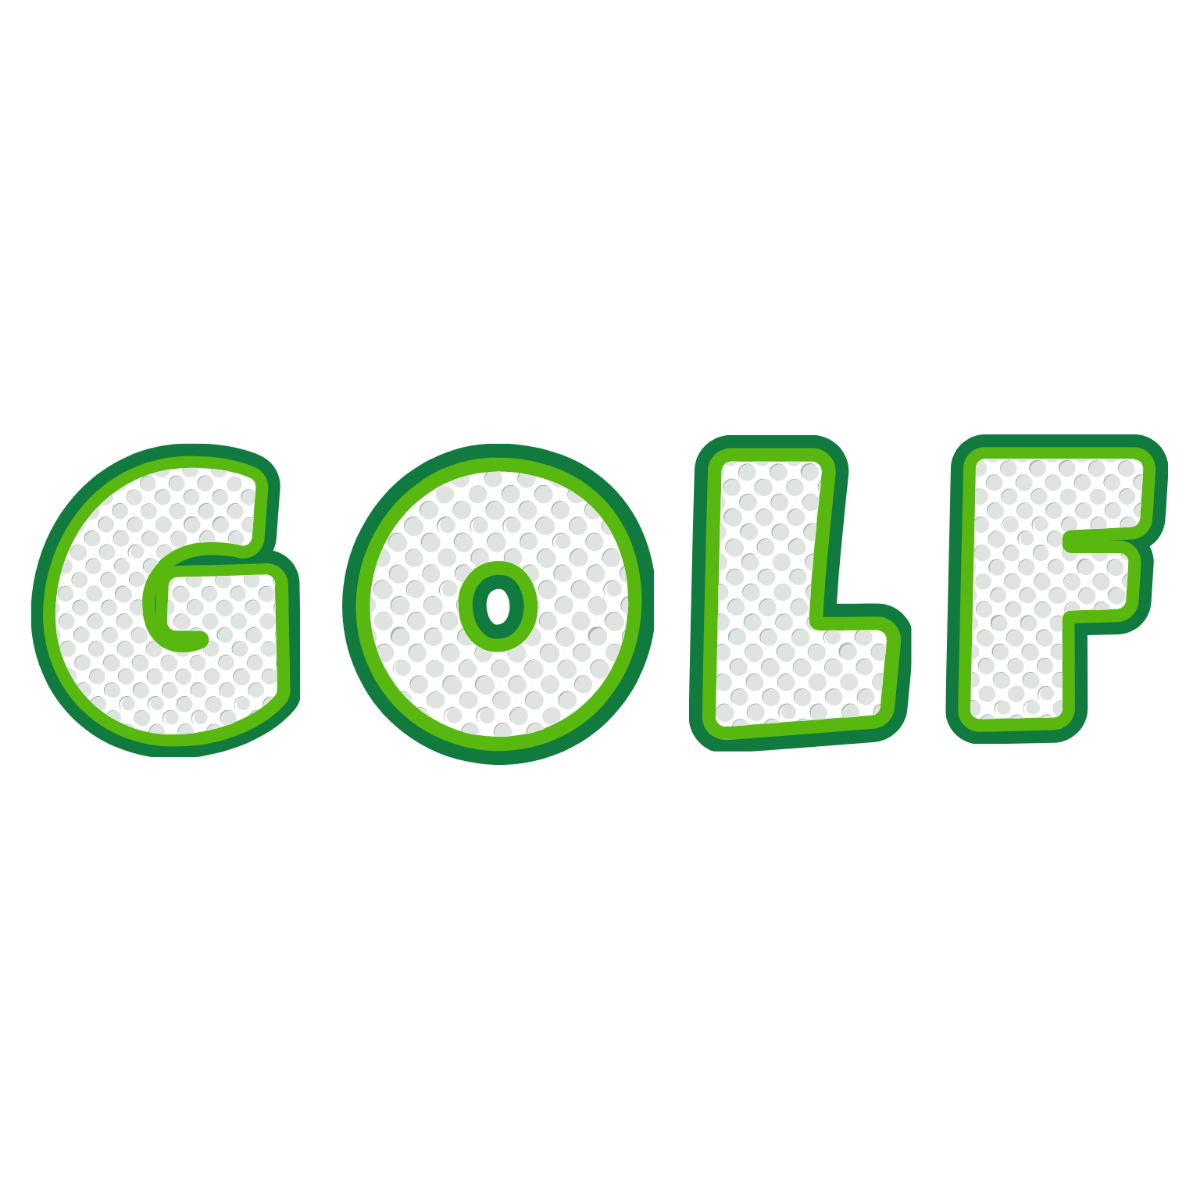 Golf Text Effect Template